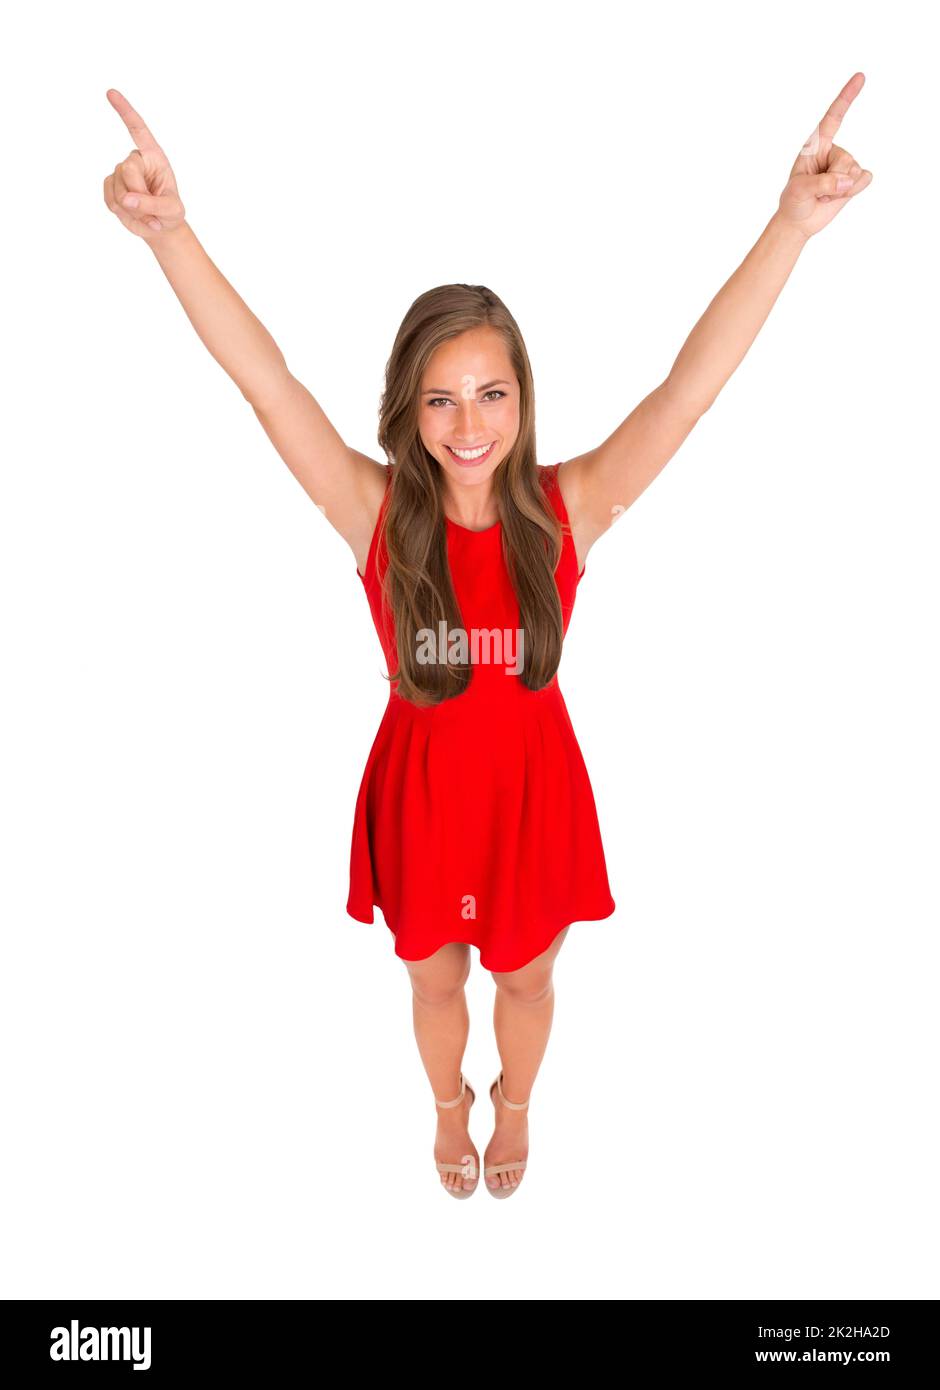 Shes a tout ce dont vous avez besoin. Photo en grand angle d'une jeune femme attrayante posant sur un fond blanc. Banque D'Images